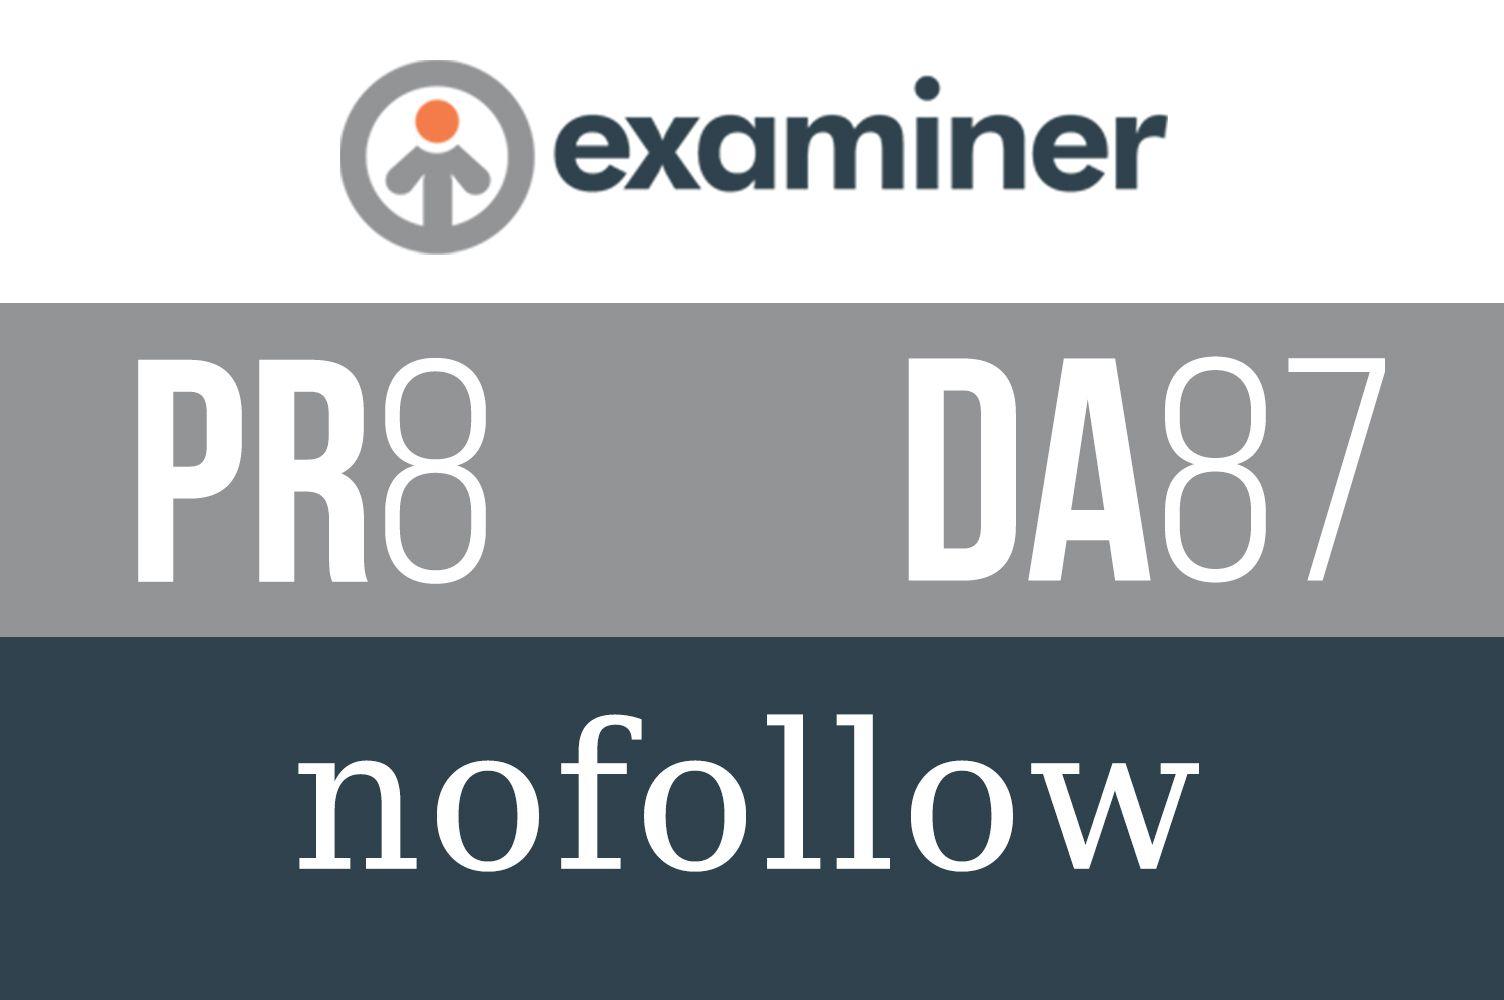 Examiner.com Logo - Guest Post on Examiner. com, a PR8 and DA87 Website